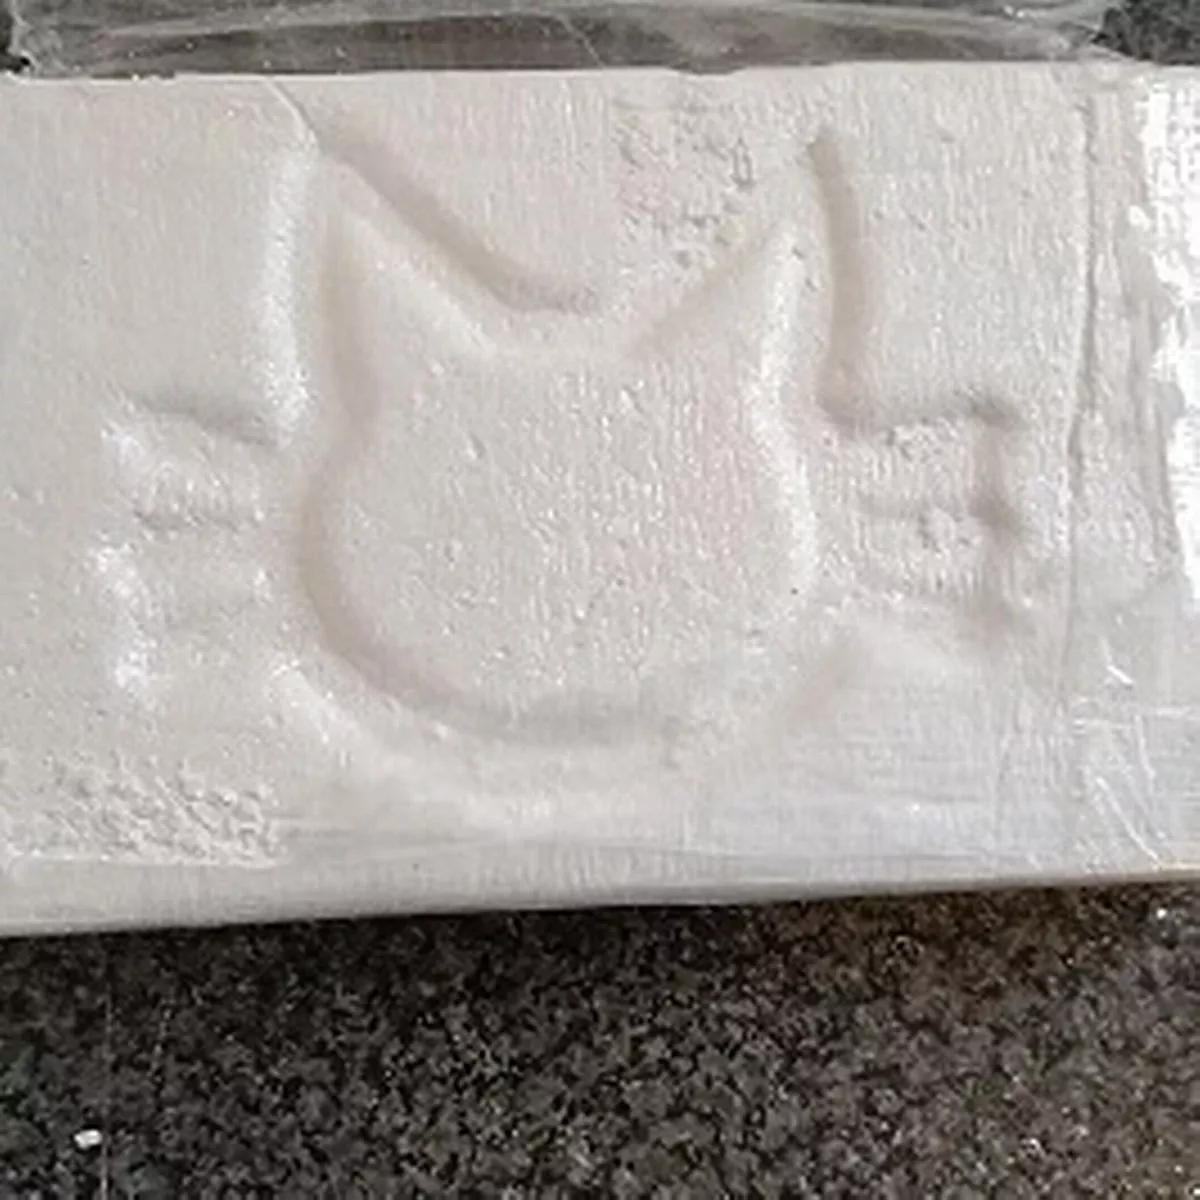 Buy Cocaine in Georgia Online